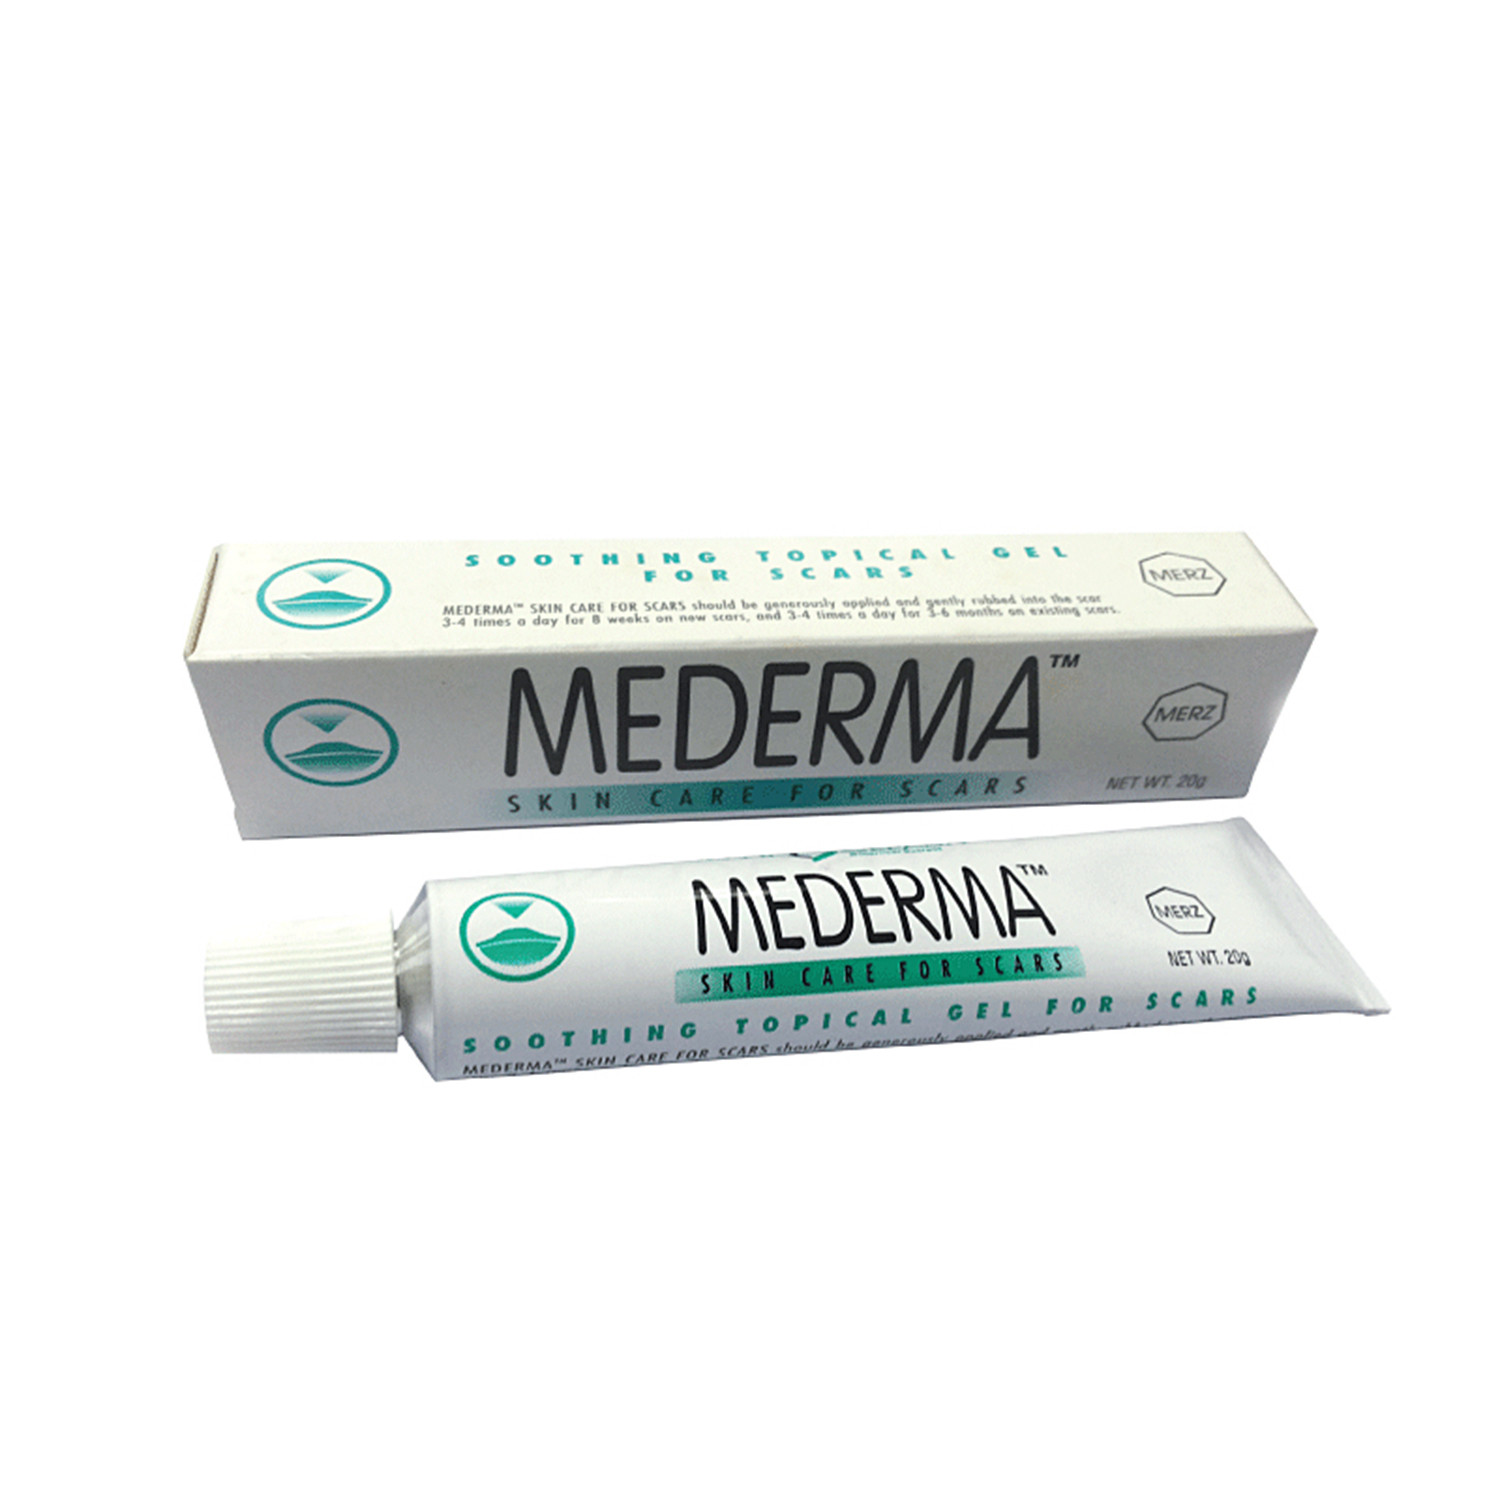 Mederma Skin Care For Scars 20gram